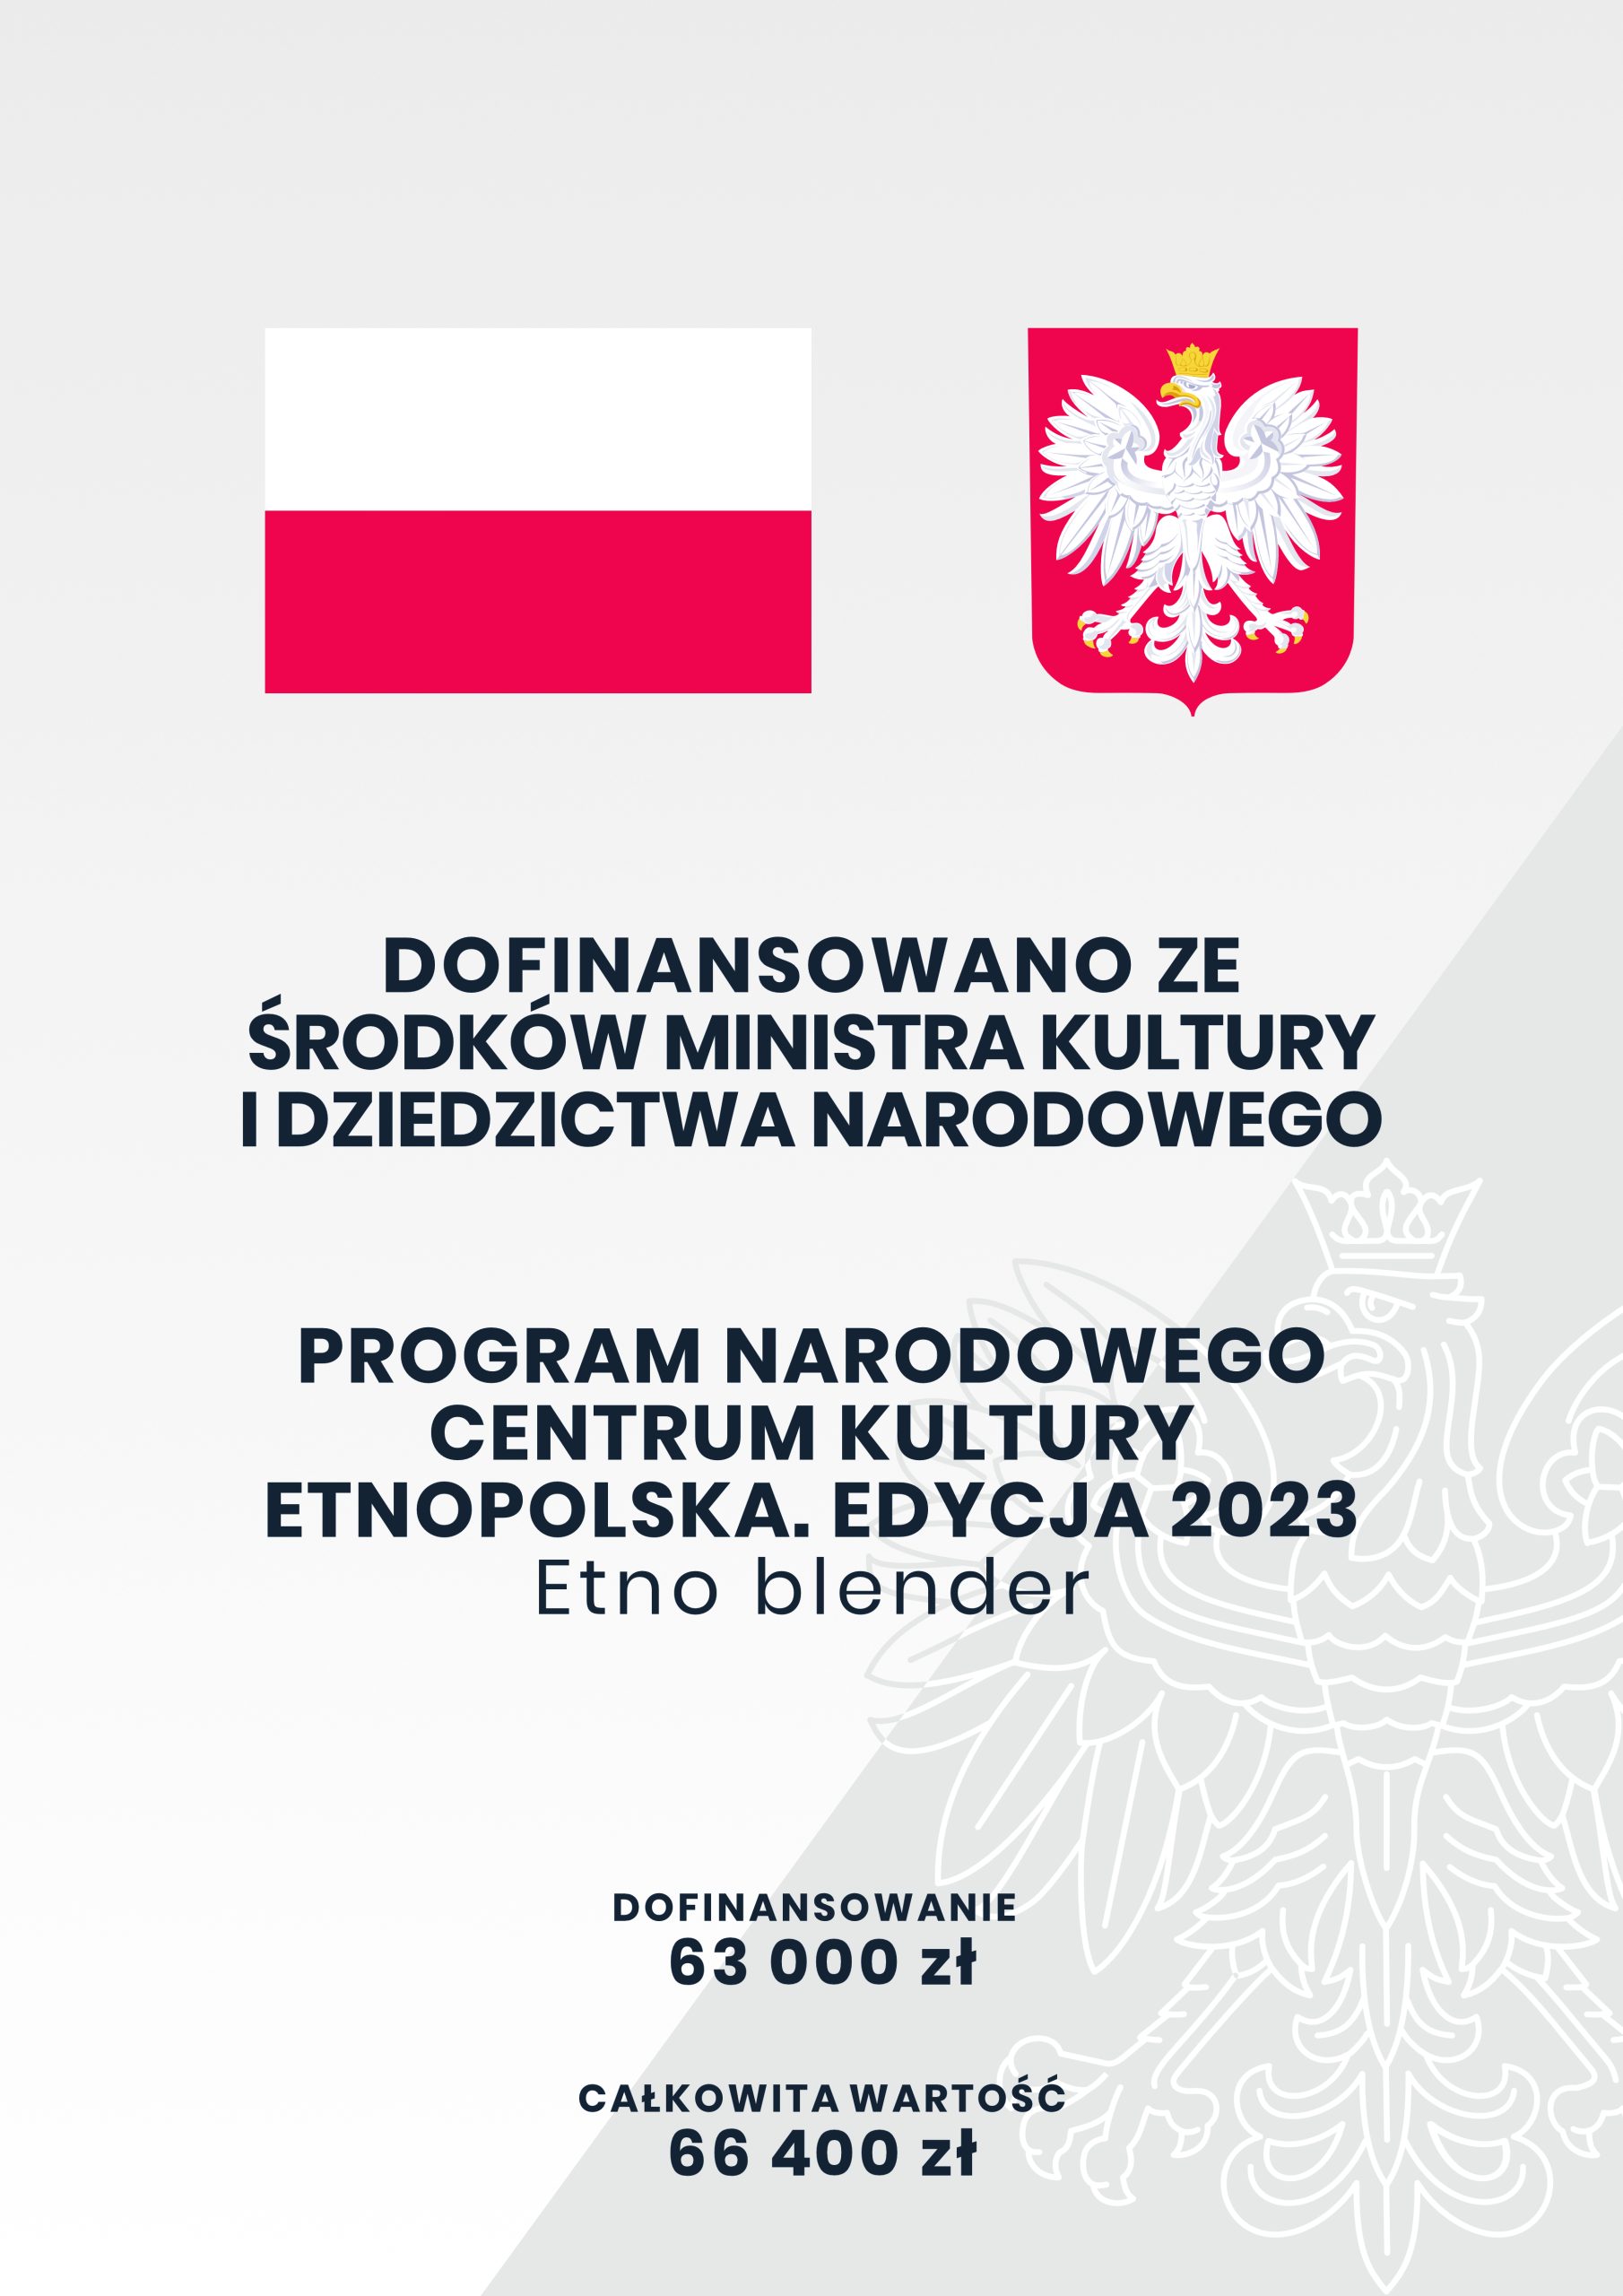 Informacja o dofinansowaniu ze środków Ministerstwa Kultury i dziedzictwa narodowego, program Etno - Blender edycja 2023, kwota dofinansowania 63000 złotych.